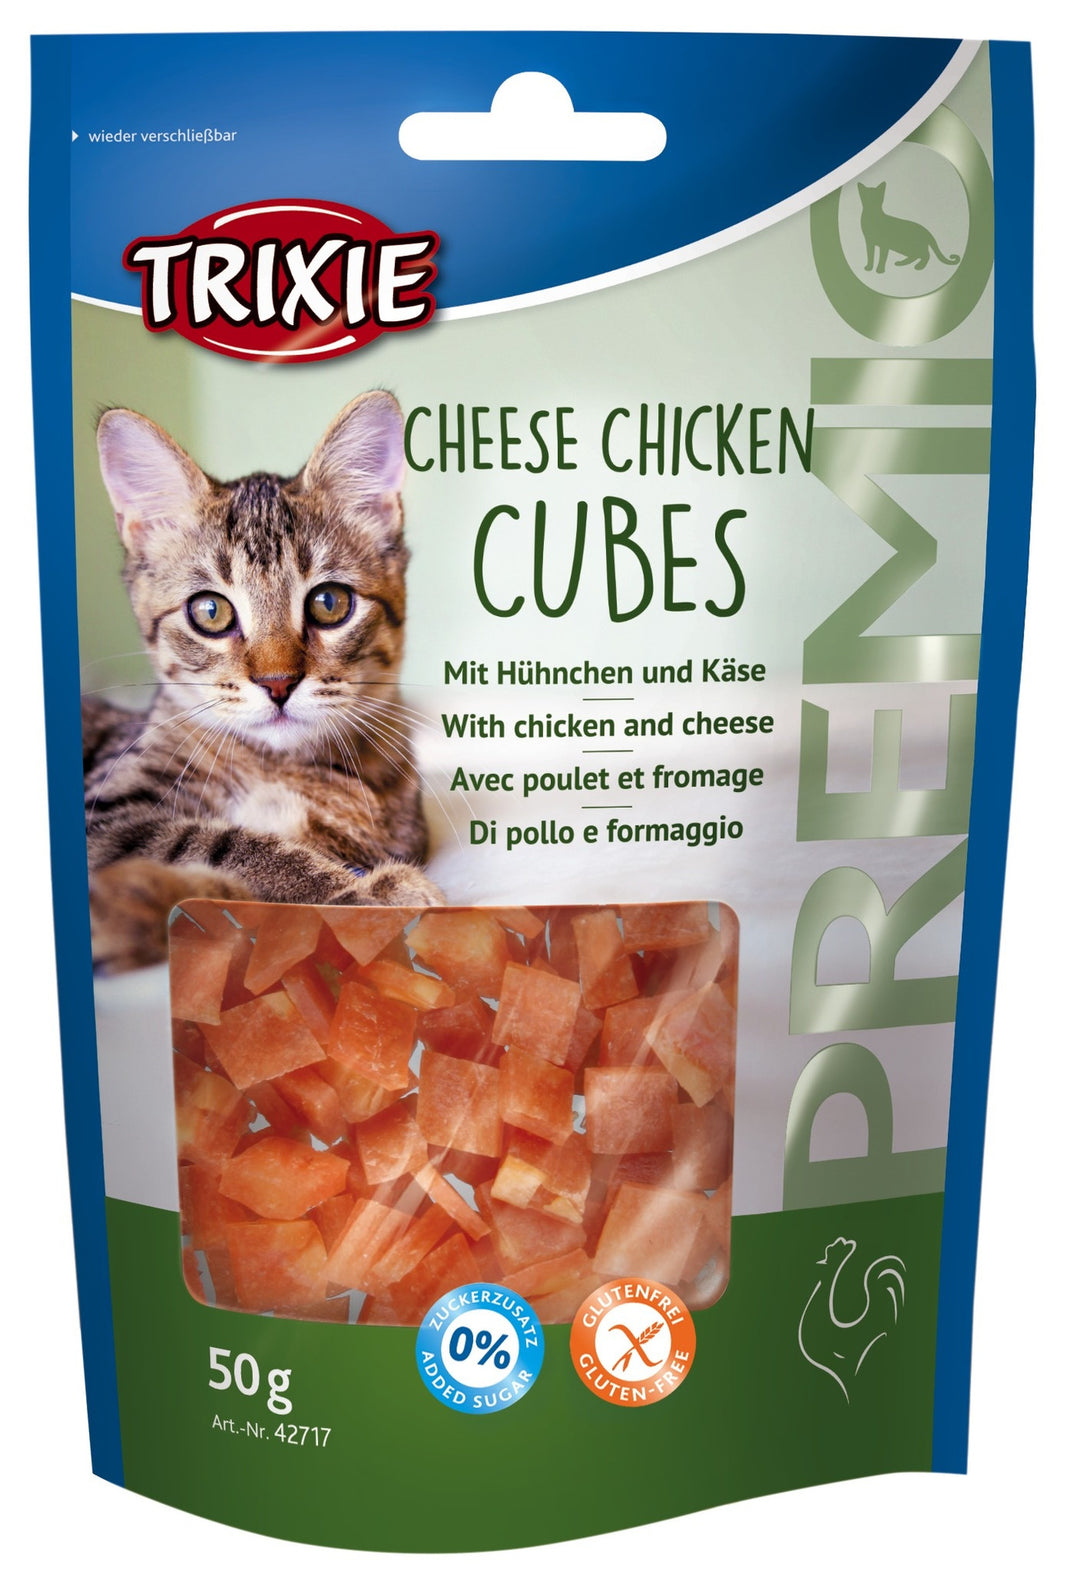 PREMIO Cheese Chicken Cubes